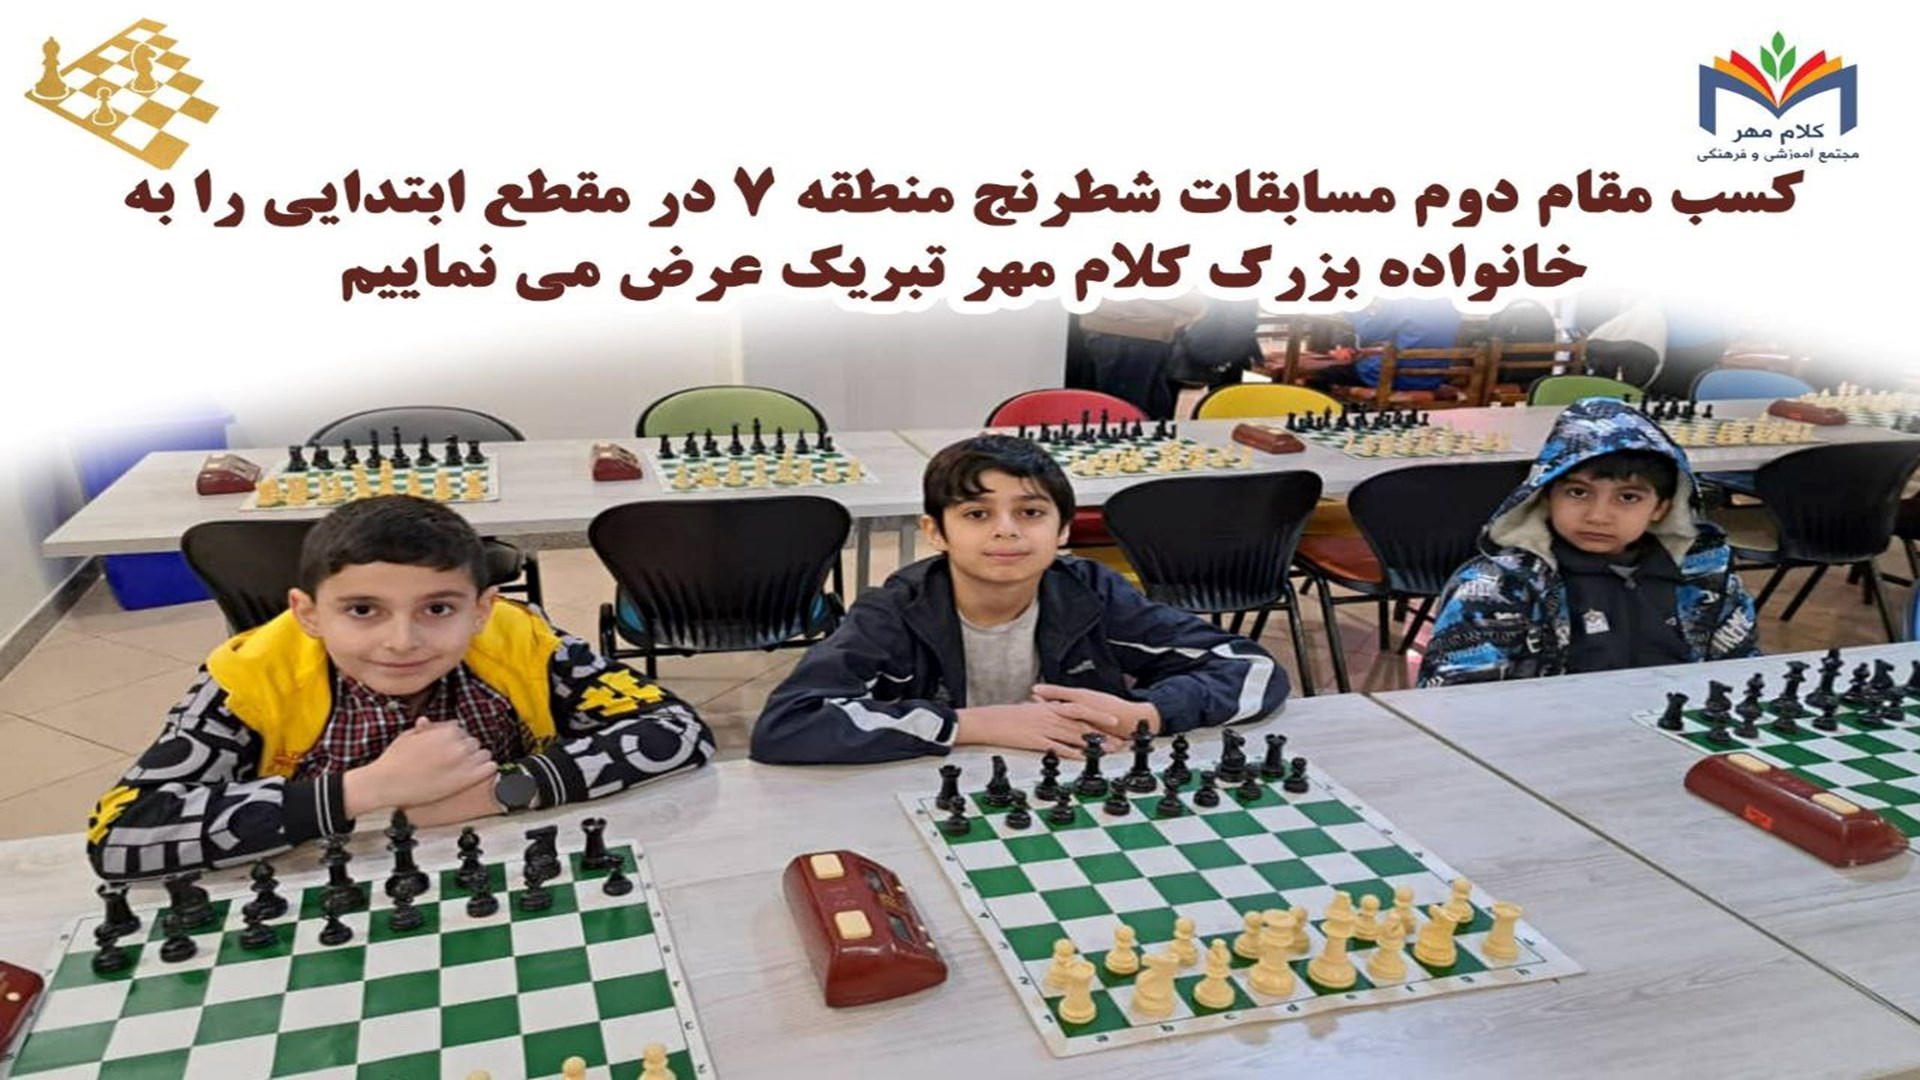  کسب مقام دوم مسابقات شطرنج منطقه 7 مقطع ابتدایی